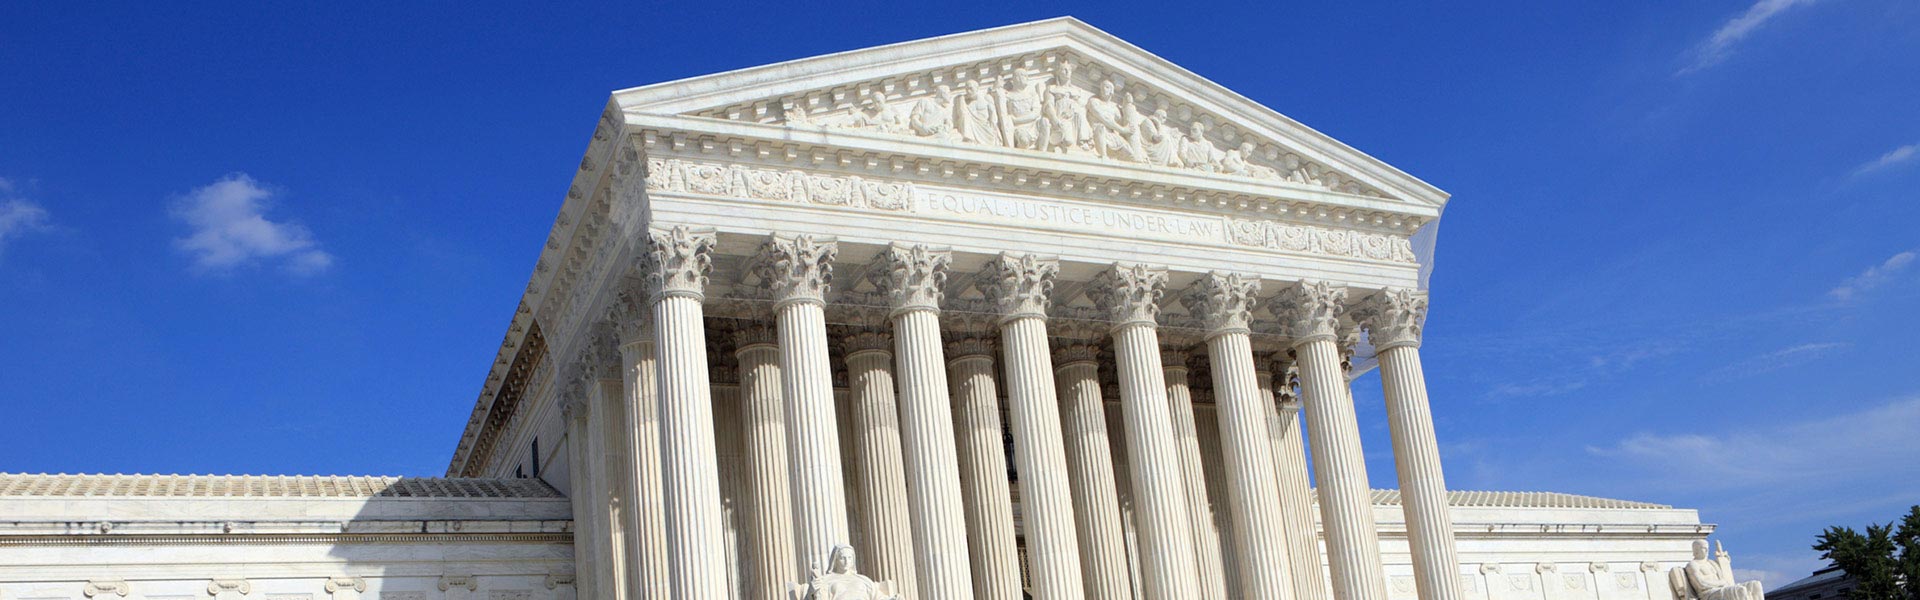 supreme court tour cost